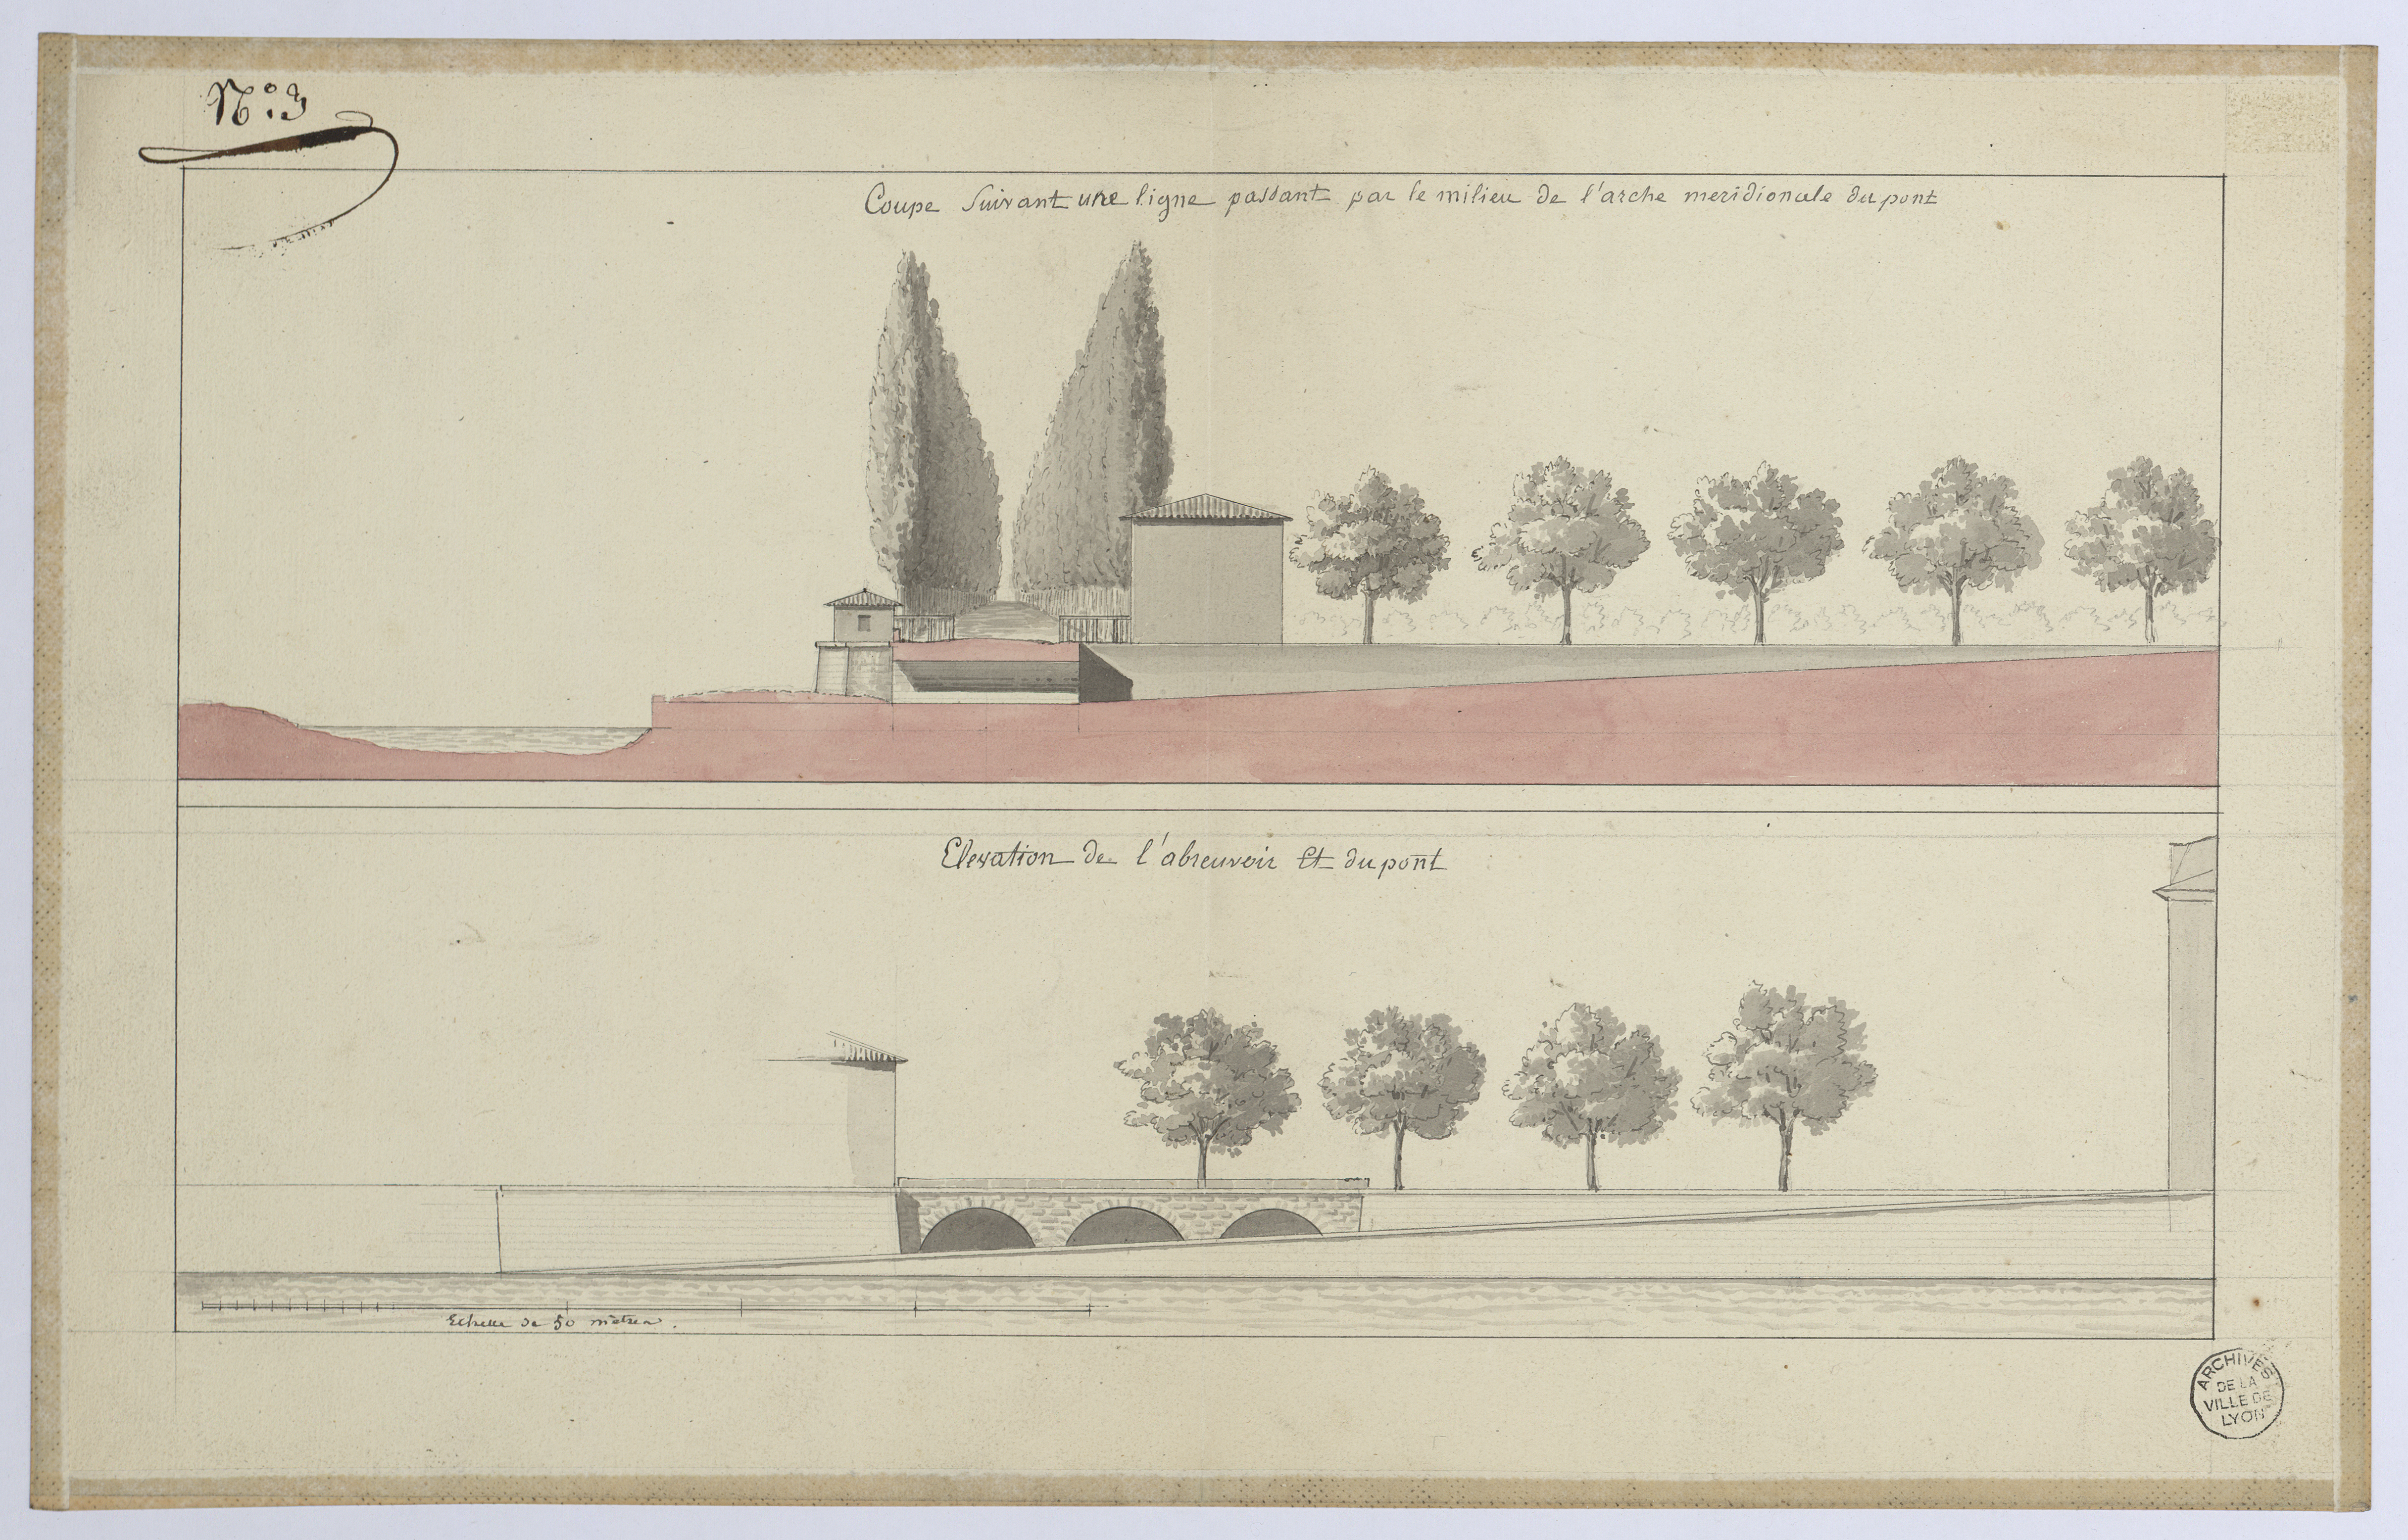 Chaussée Perrache (actuel quai Perrache), coupe et vue perspective et élévation : plan manuscrit couleur (vers 1820, cote : 3S/152)